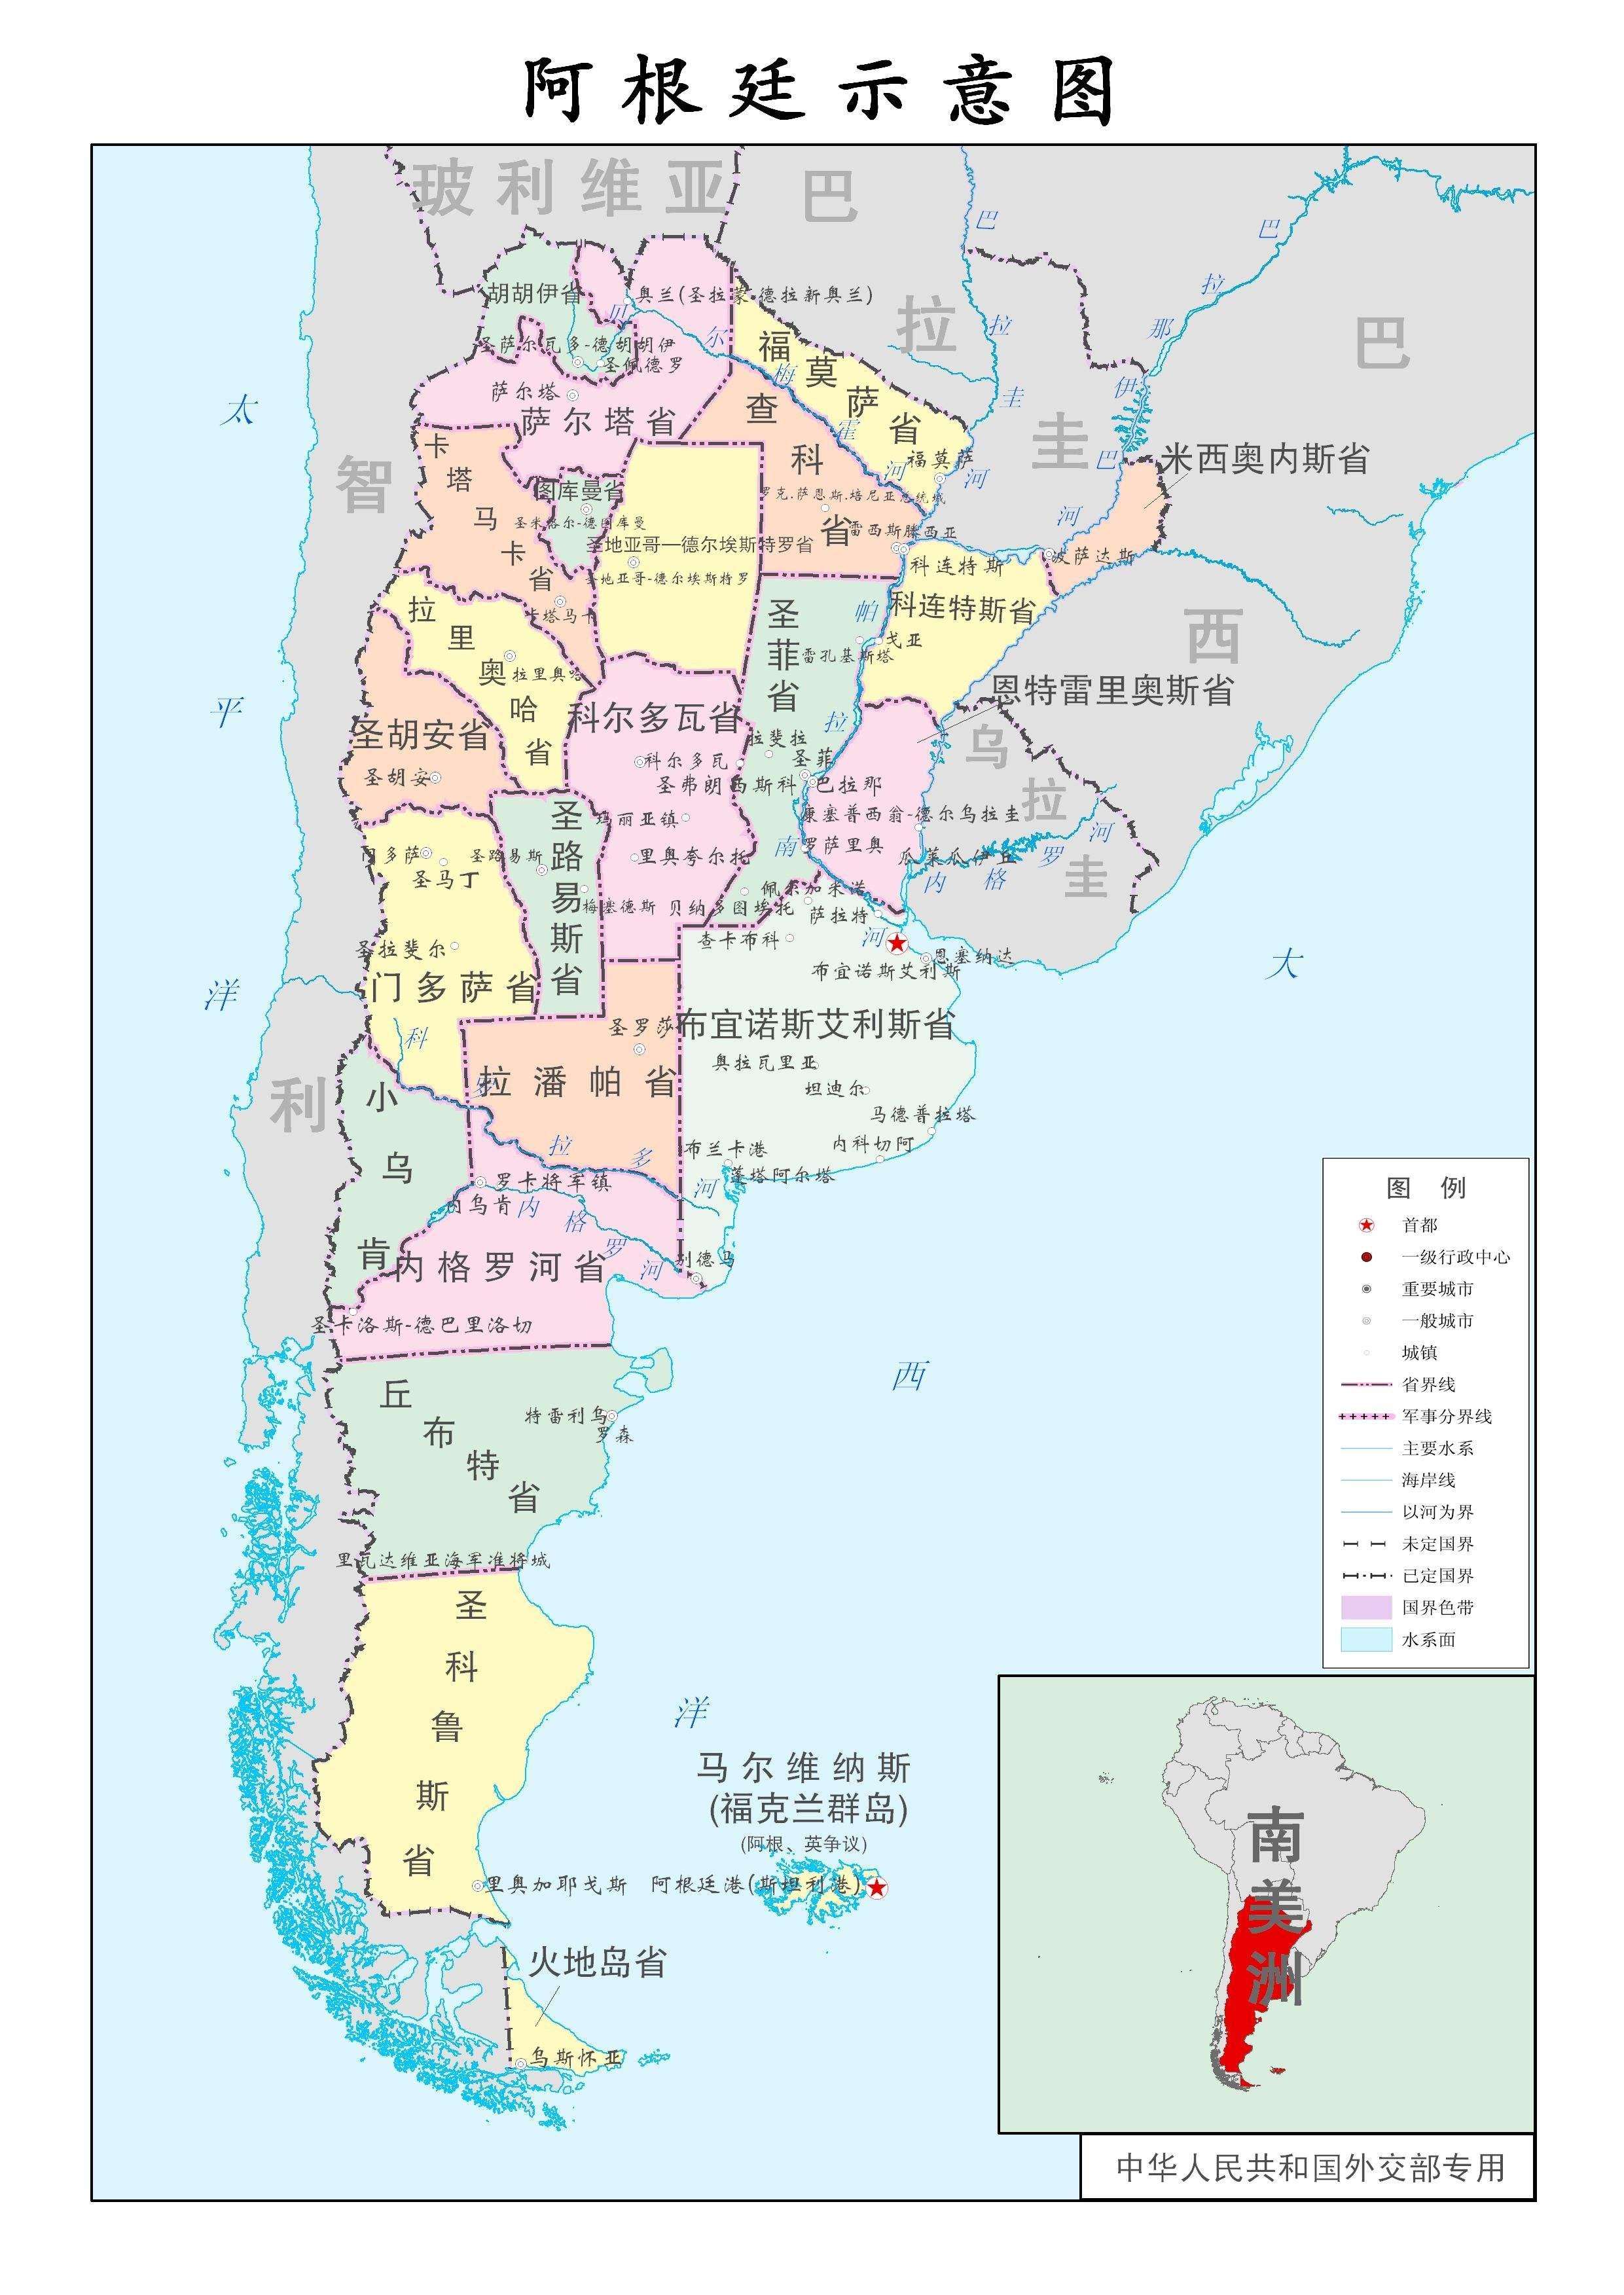 按照面积来说,图库曼是阿根廷面积第二小的行政区,但却是阿根廷的人口